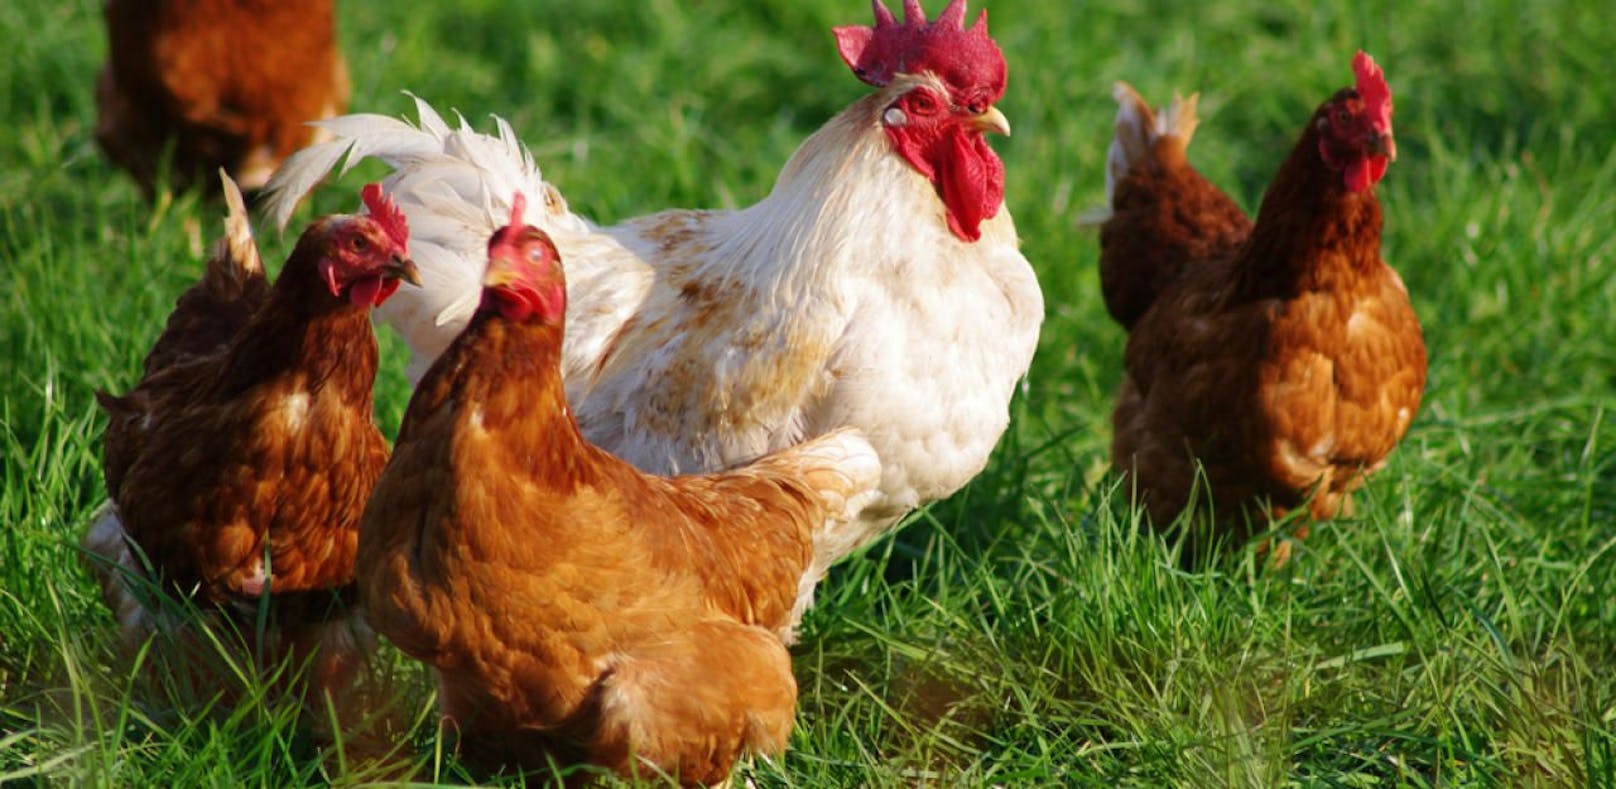 Mit einem Rohr: Tierquäler erschlägt 18 Hühner